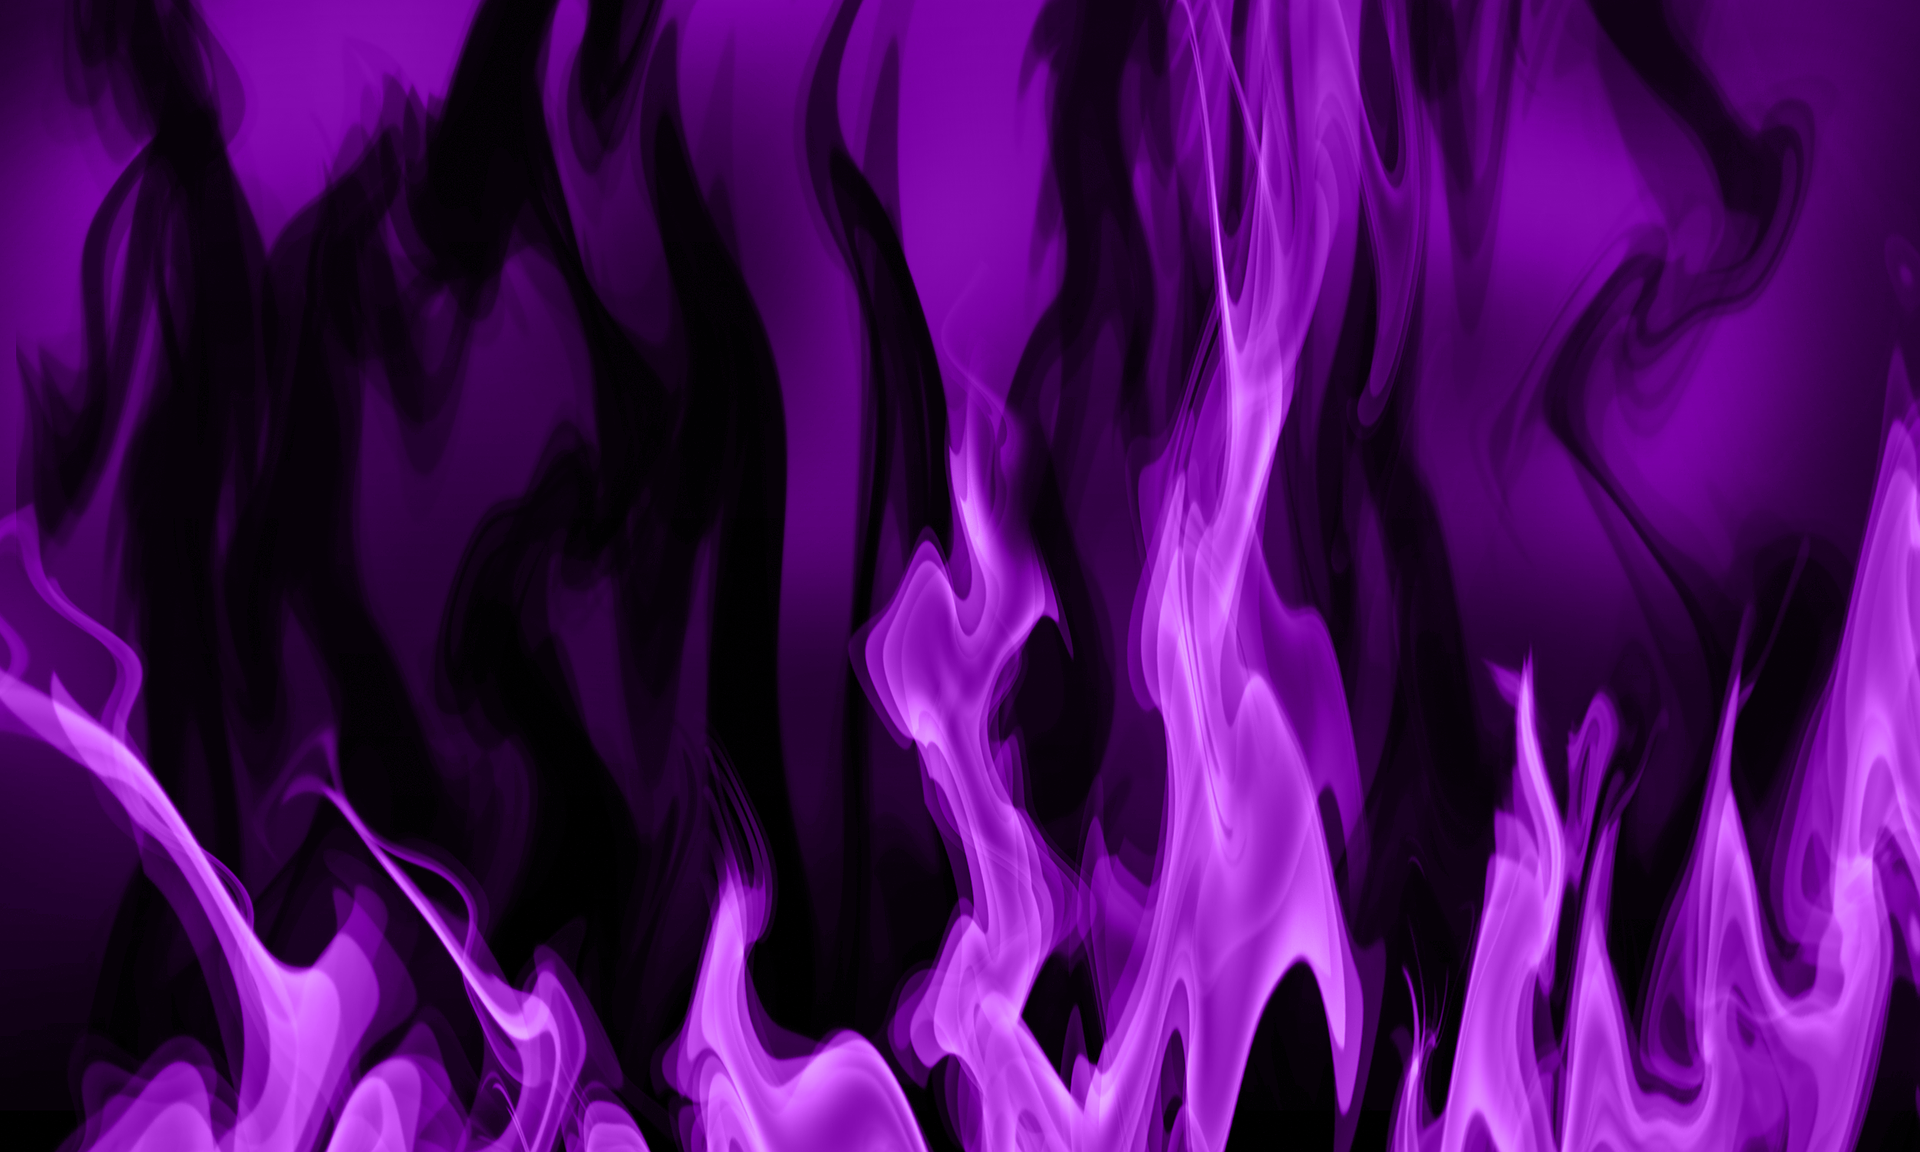 The Violet Flame of Transmutation